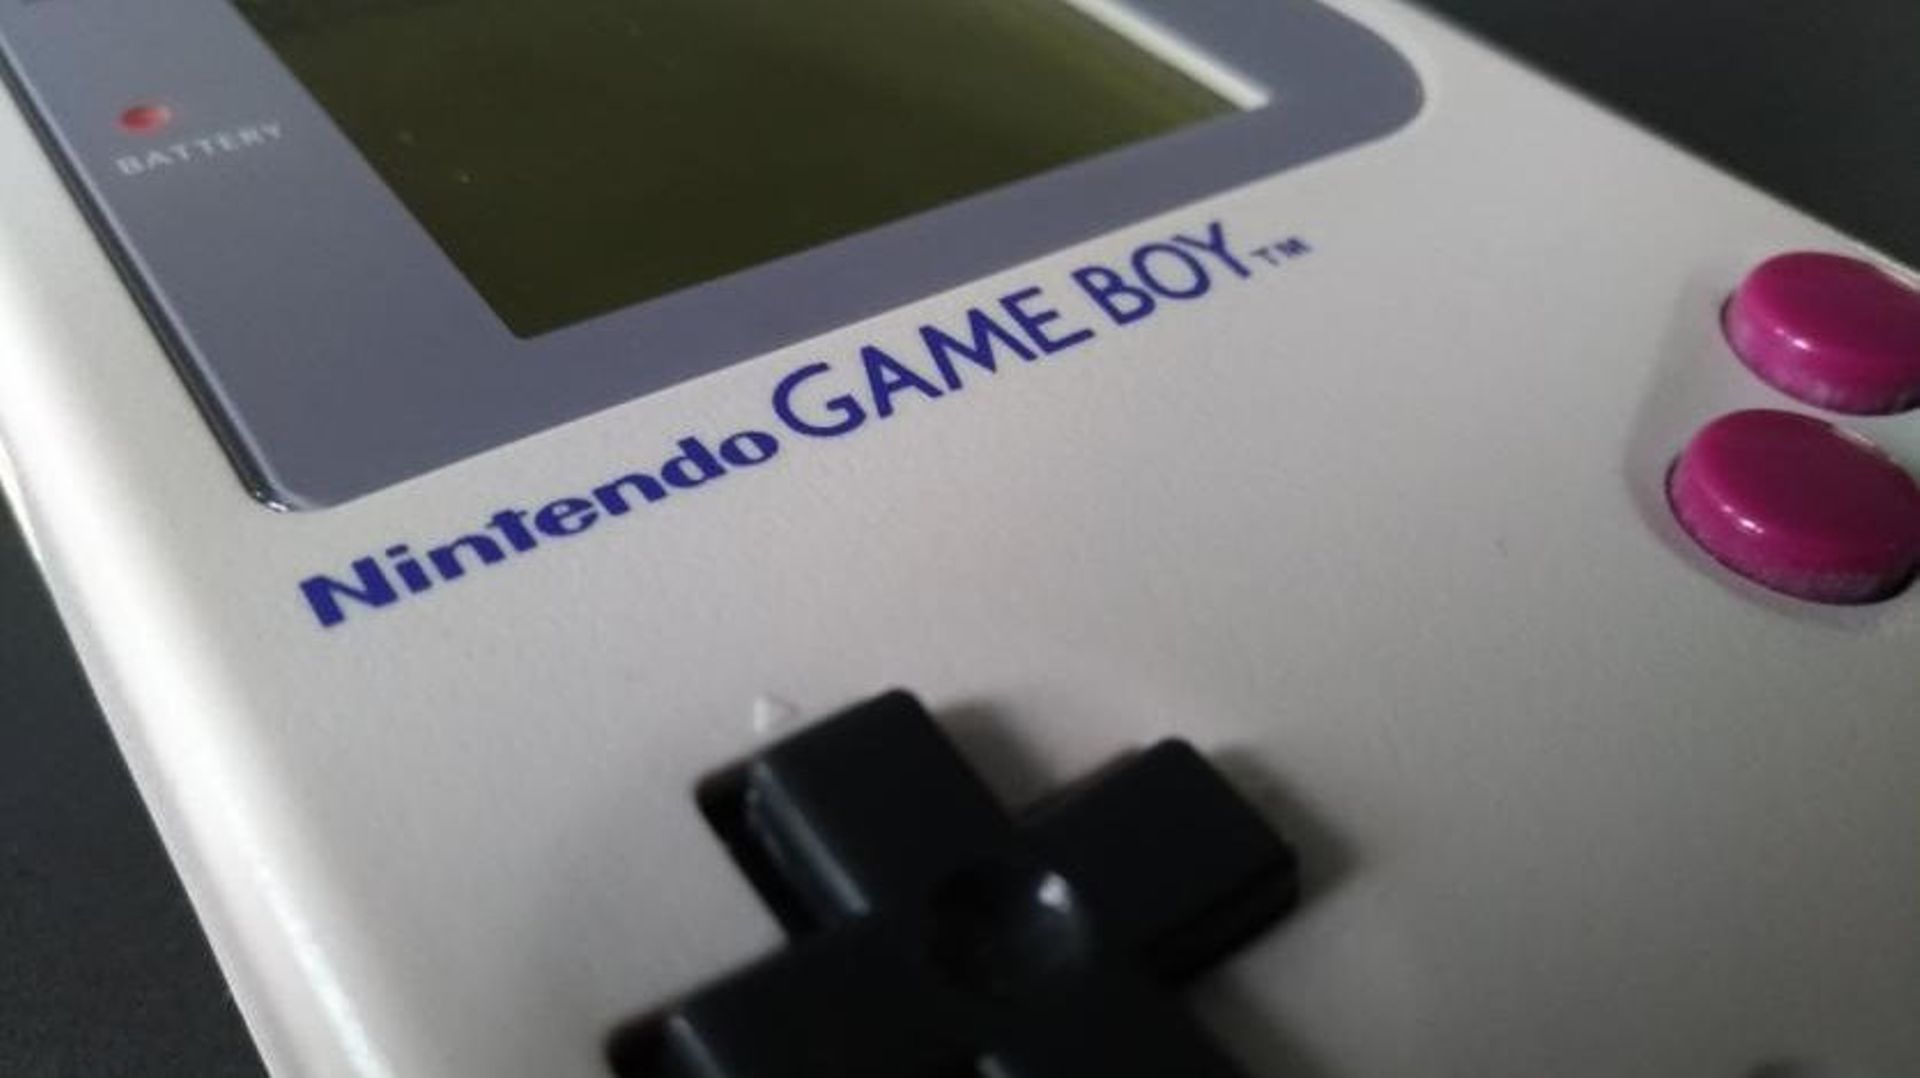 Un nouveau jeu sort sur Game Boy 30 ans après les débuts de la